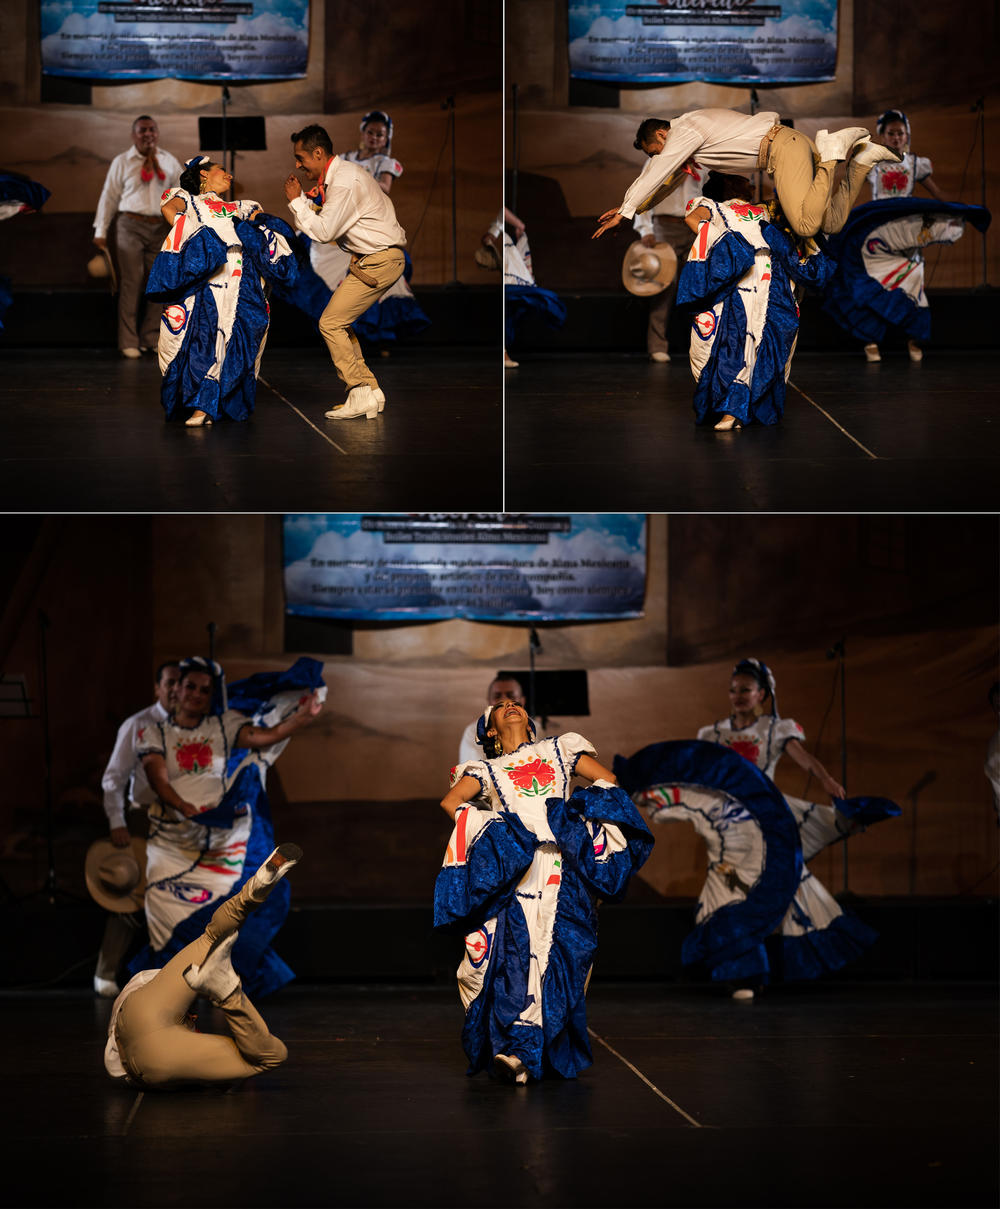 Members of the group Danzas y Bailes tradicionales Alma Mexicana perform a regional dance from Sinaloa, México, at México City's Teatro Ferrocarrilero Gudelio Morales in July.